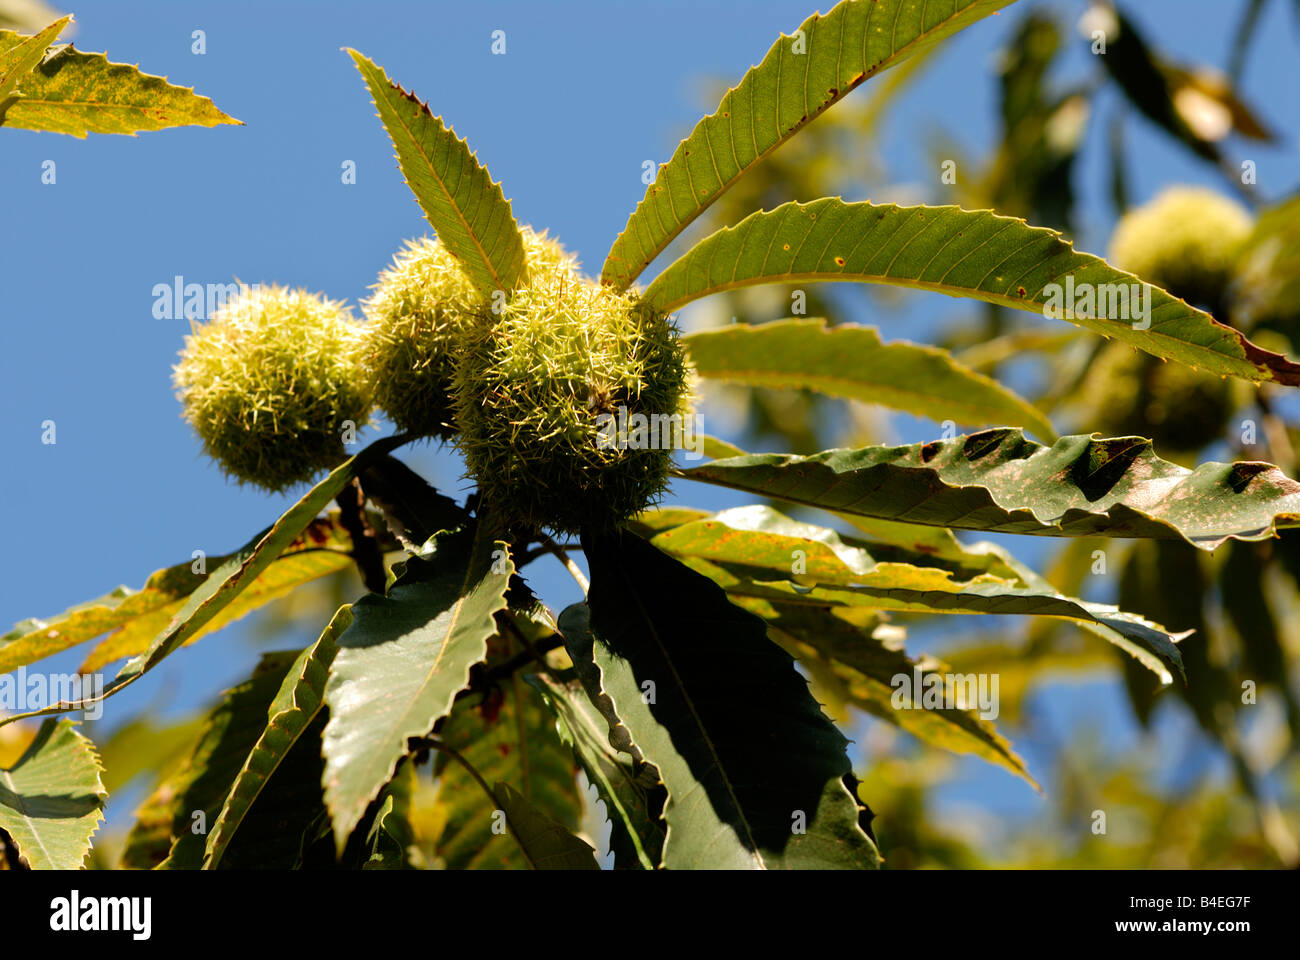 Stock Foto von der Frucht des Baumes Sweet Chestnut Stockfoto